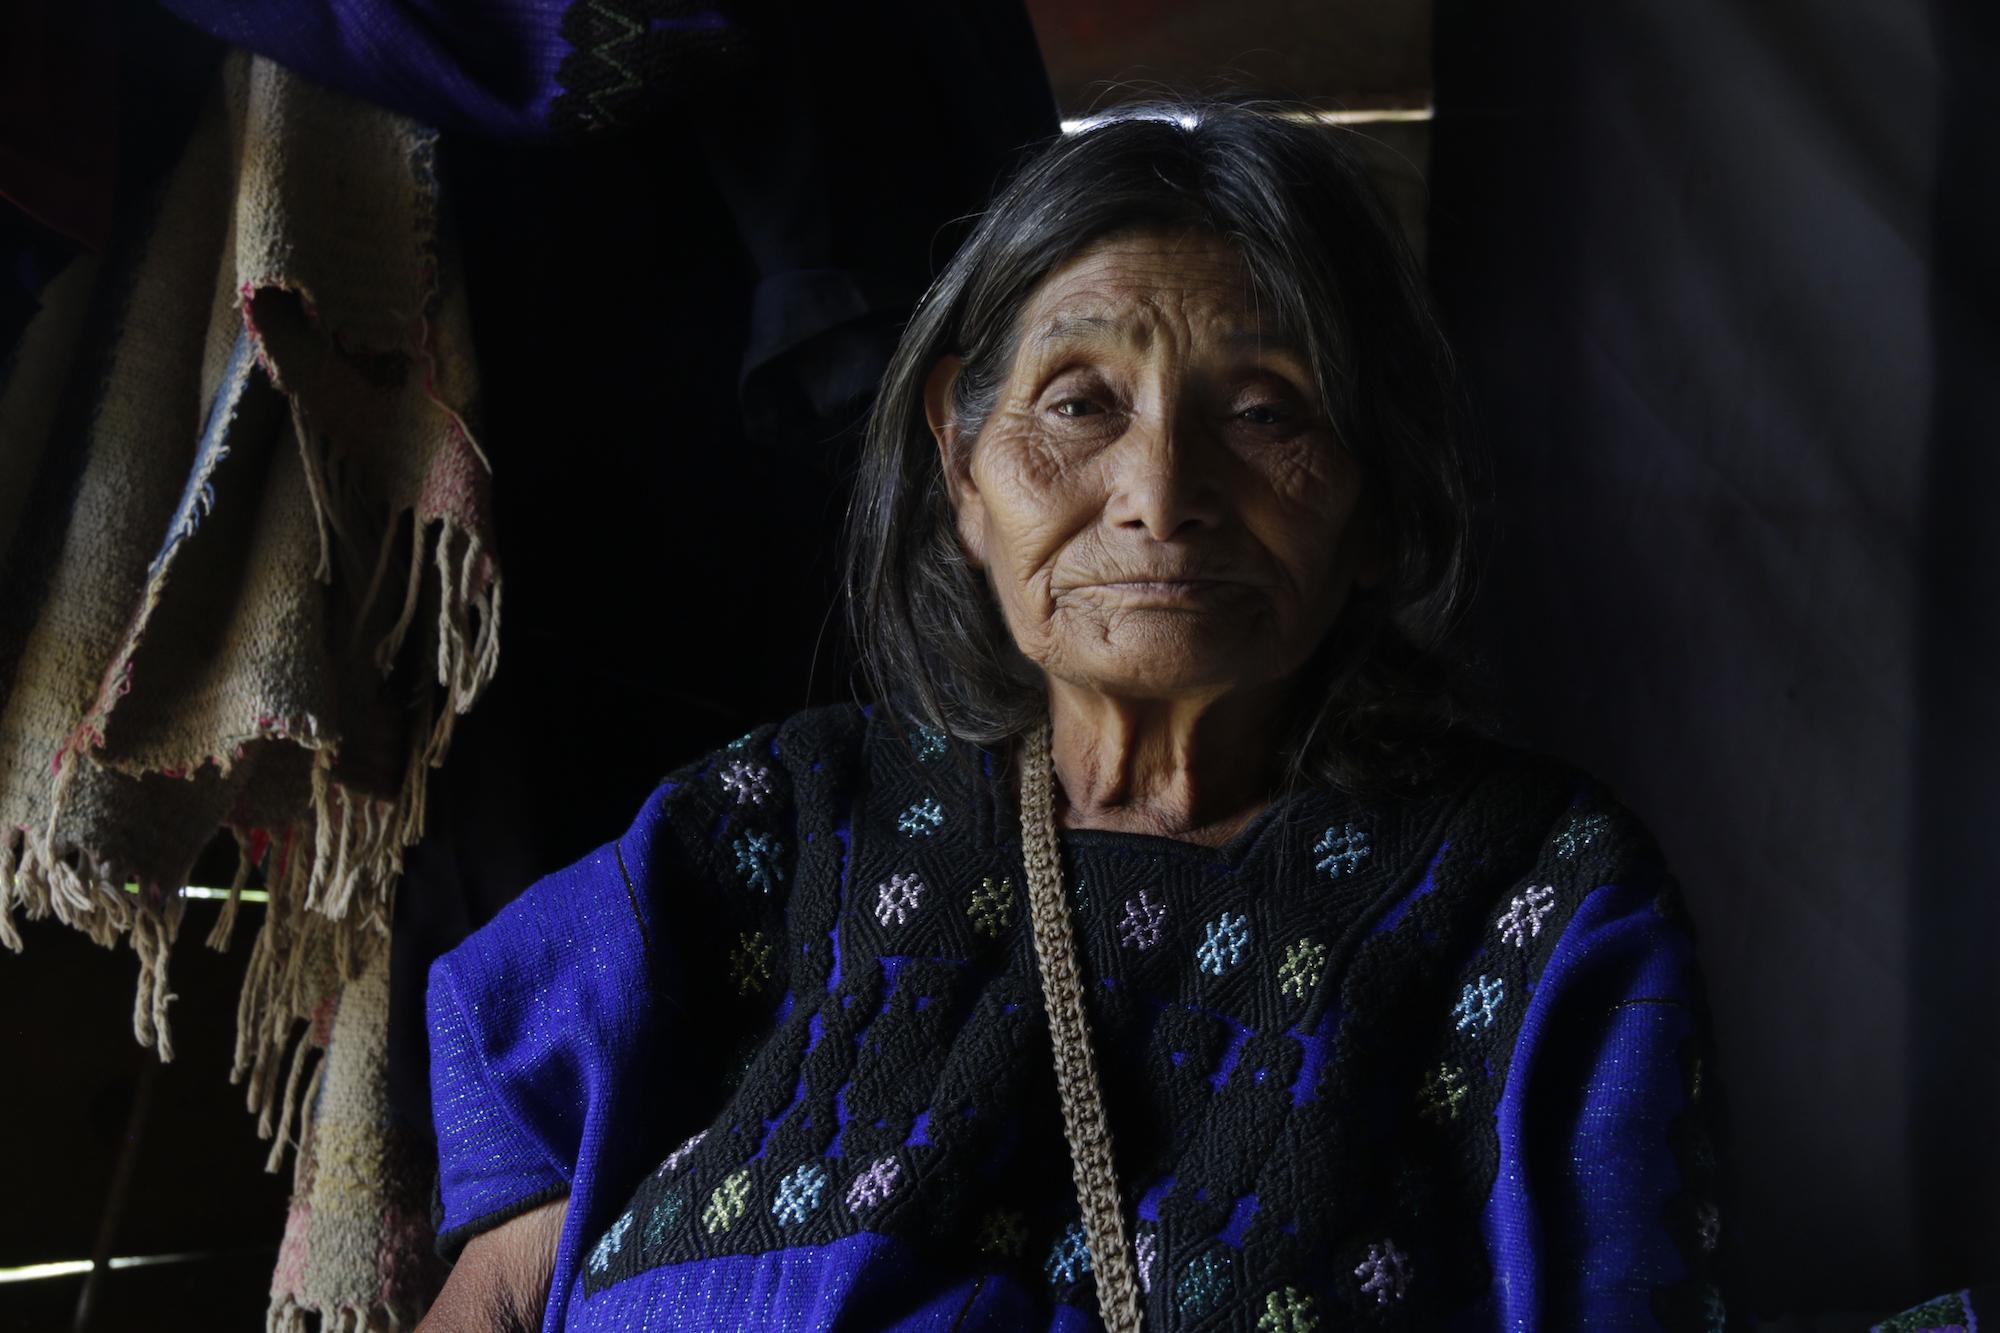 $!Mujer desplazada por enfrentamiento en Pantelhó, Chiapas. Los pobladores de la localidad denunciaron amenazas de integrantes del crimen organizado, que han provocado el desplazamiento forzado de familias.